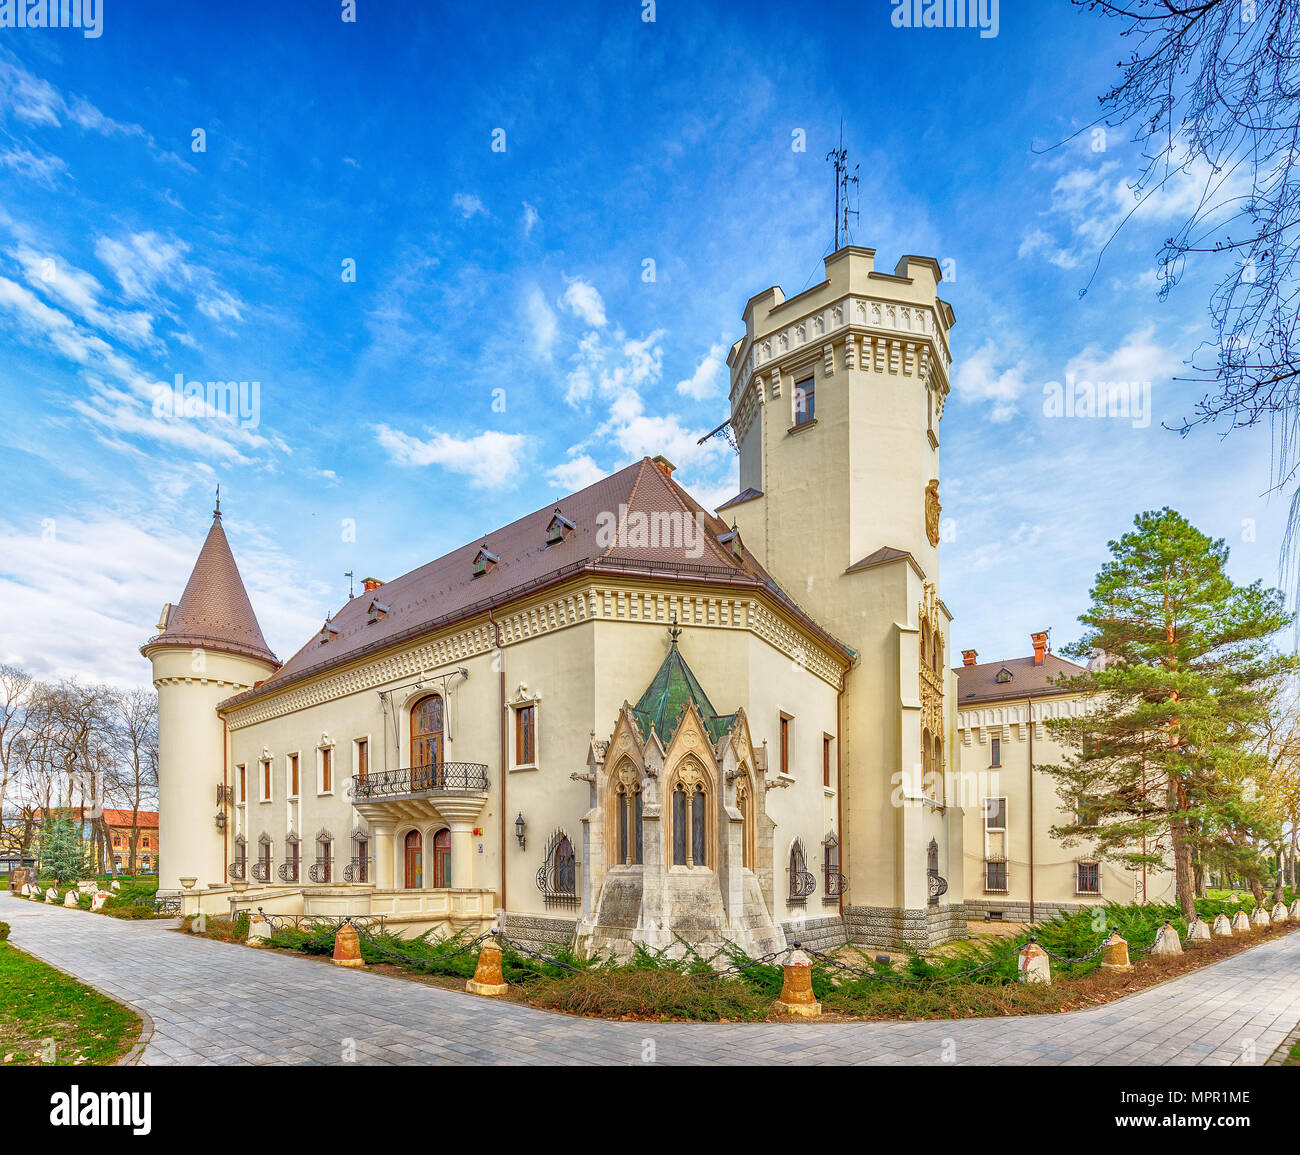 Karolyi castle in Carei, Transylvania, Romania Stock Photo